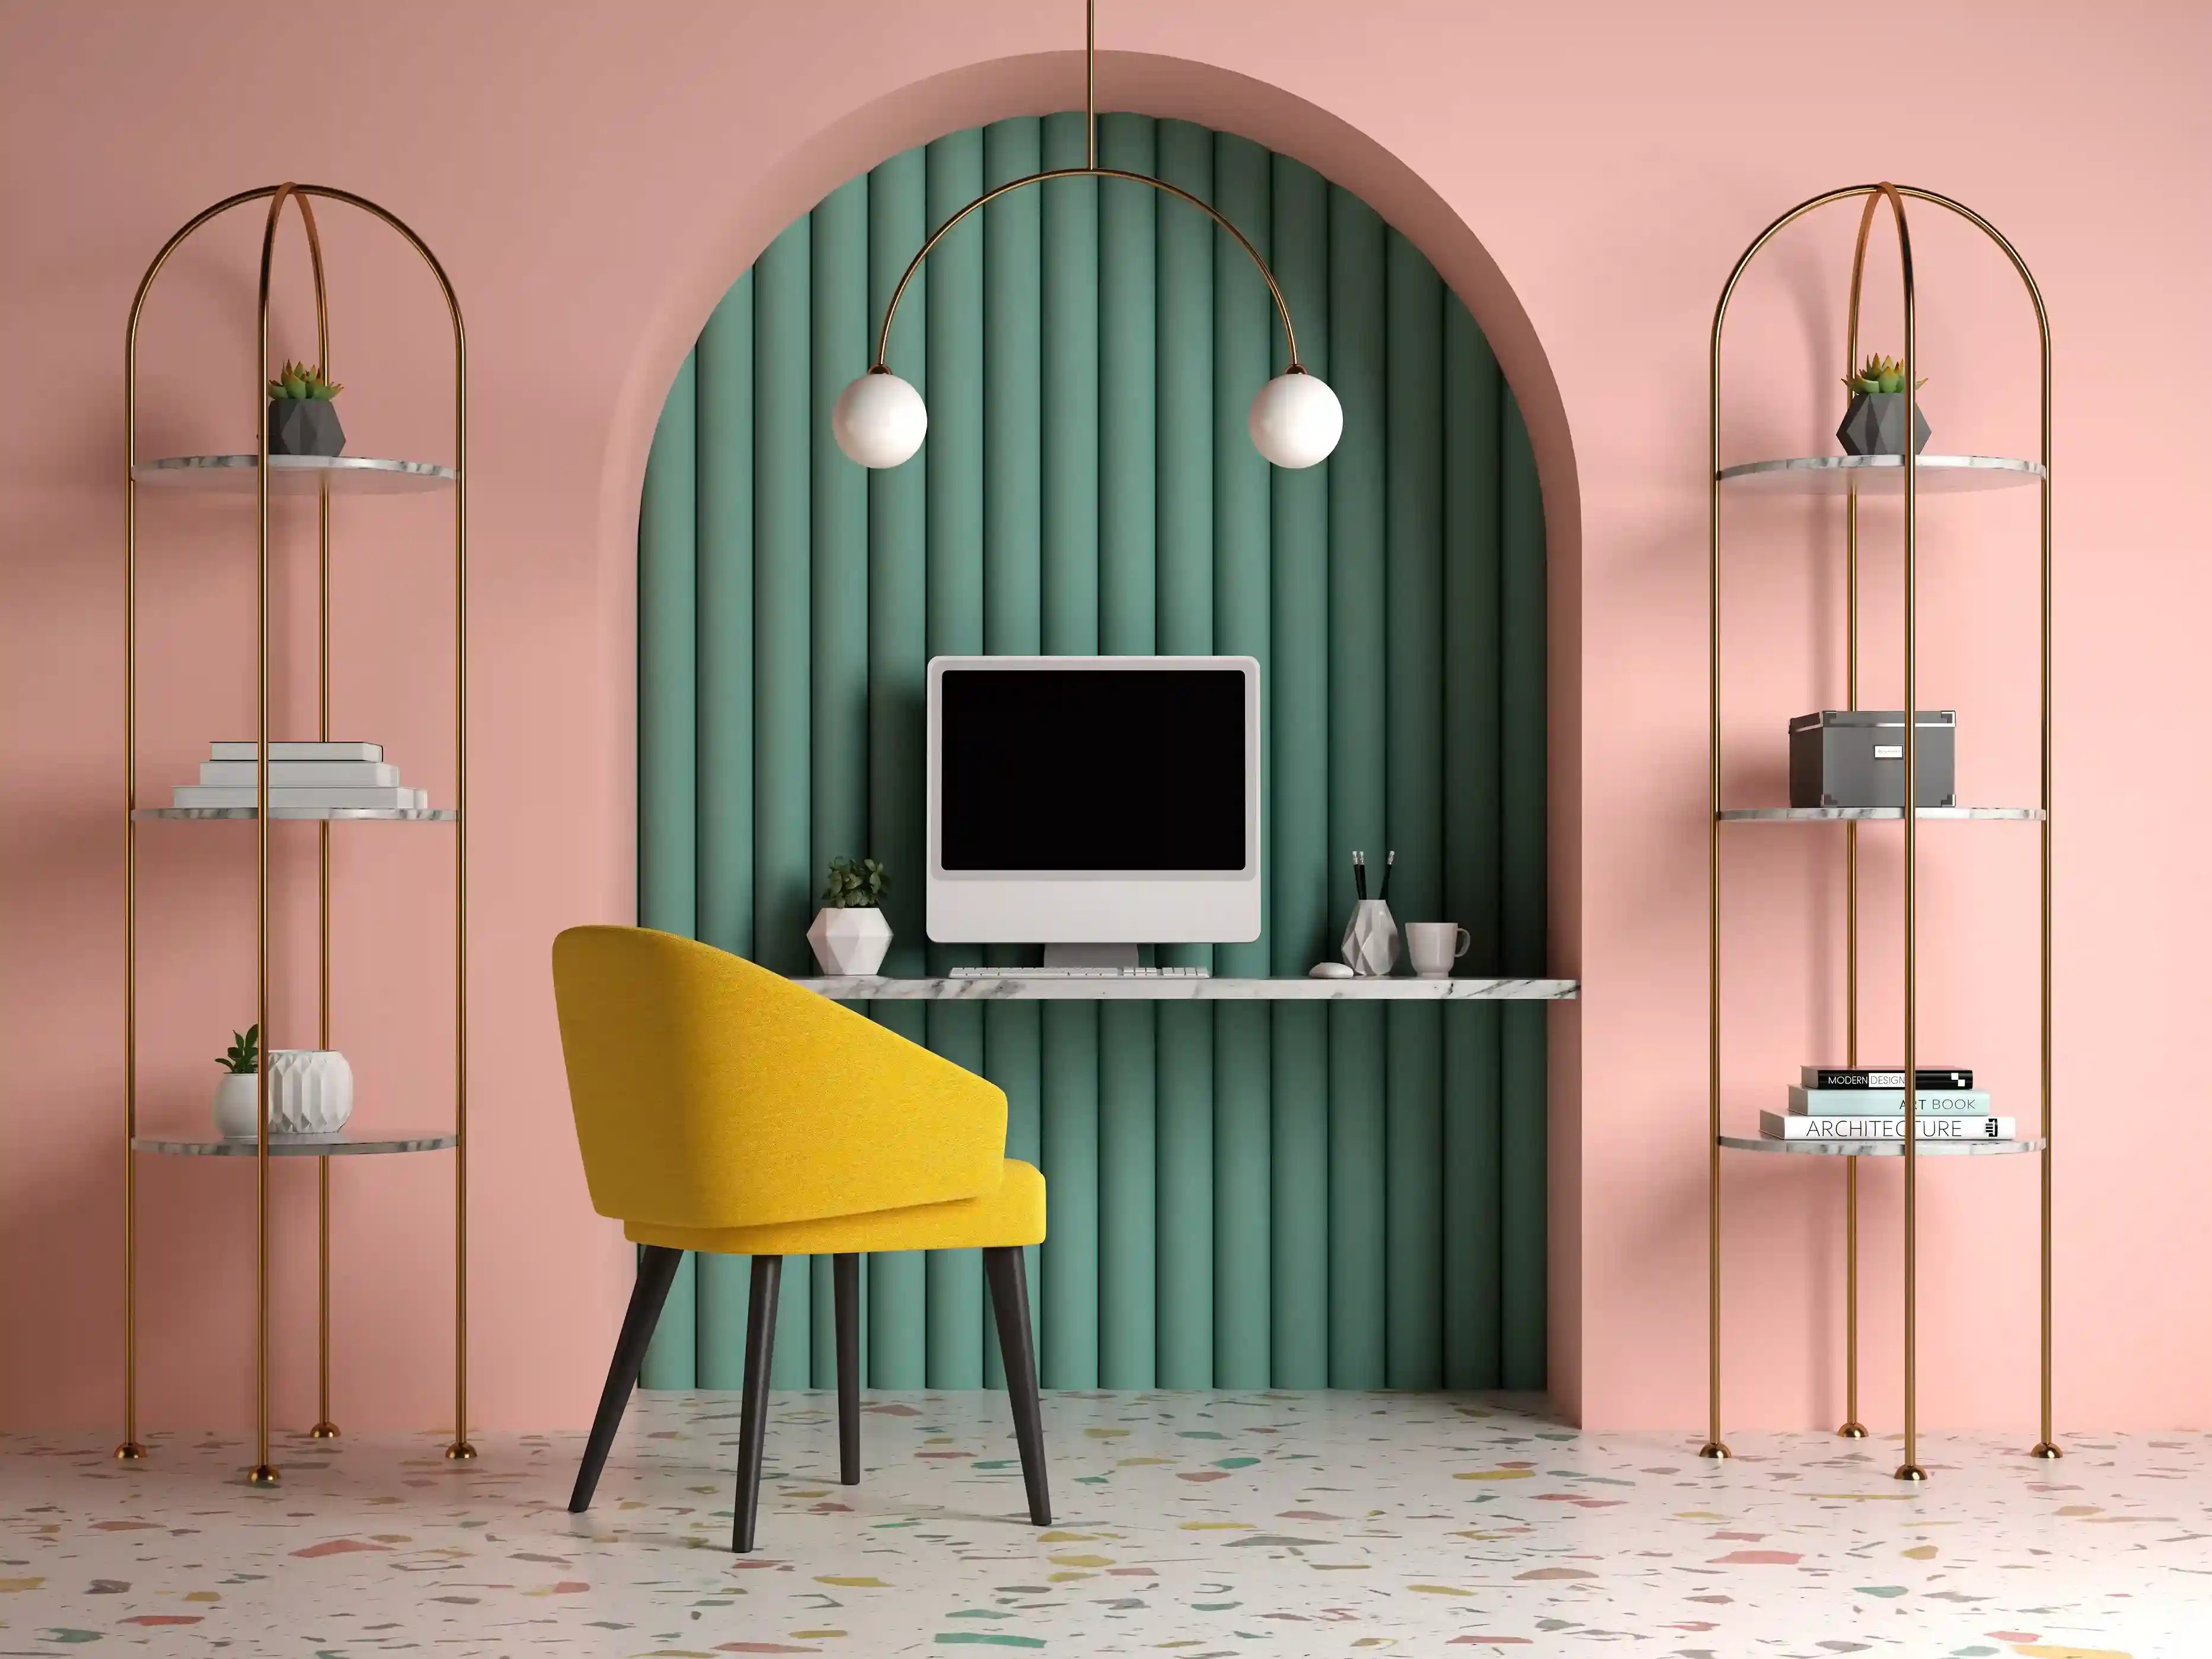 Gabinet w stylu nowoczesnym w różowo-zielonym kolorze. Na blacie stoi komputer, a przed blatem stoi żółte krzesło.